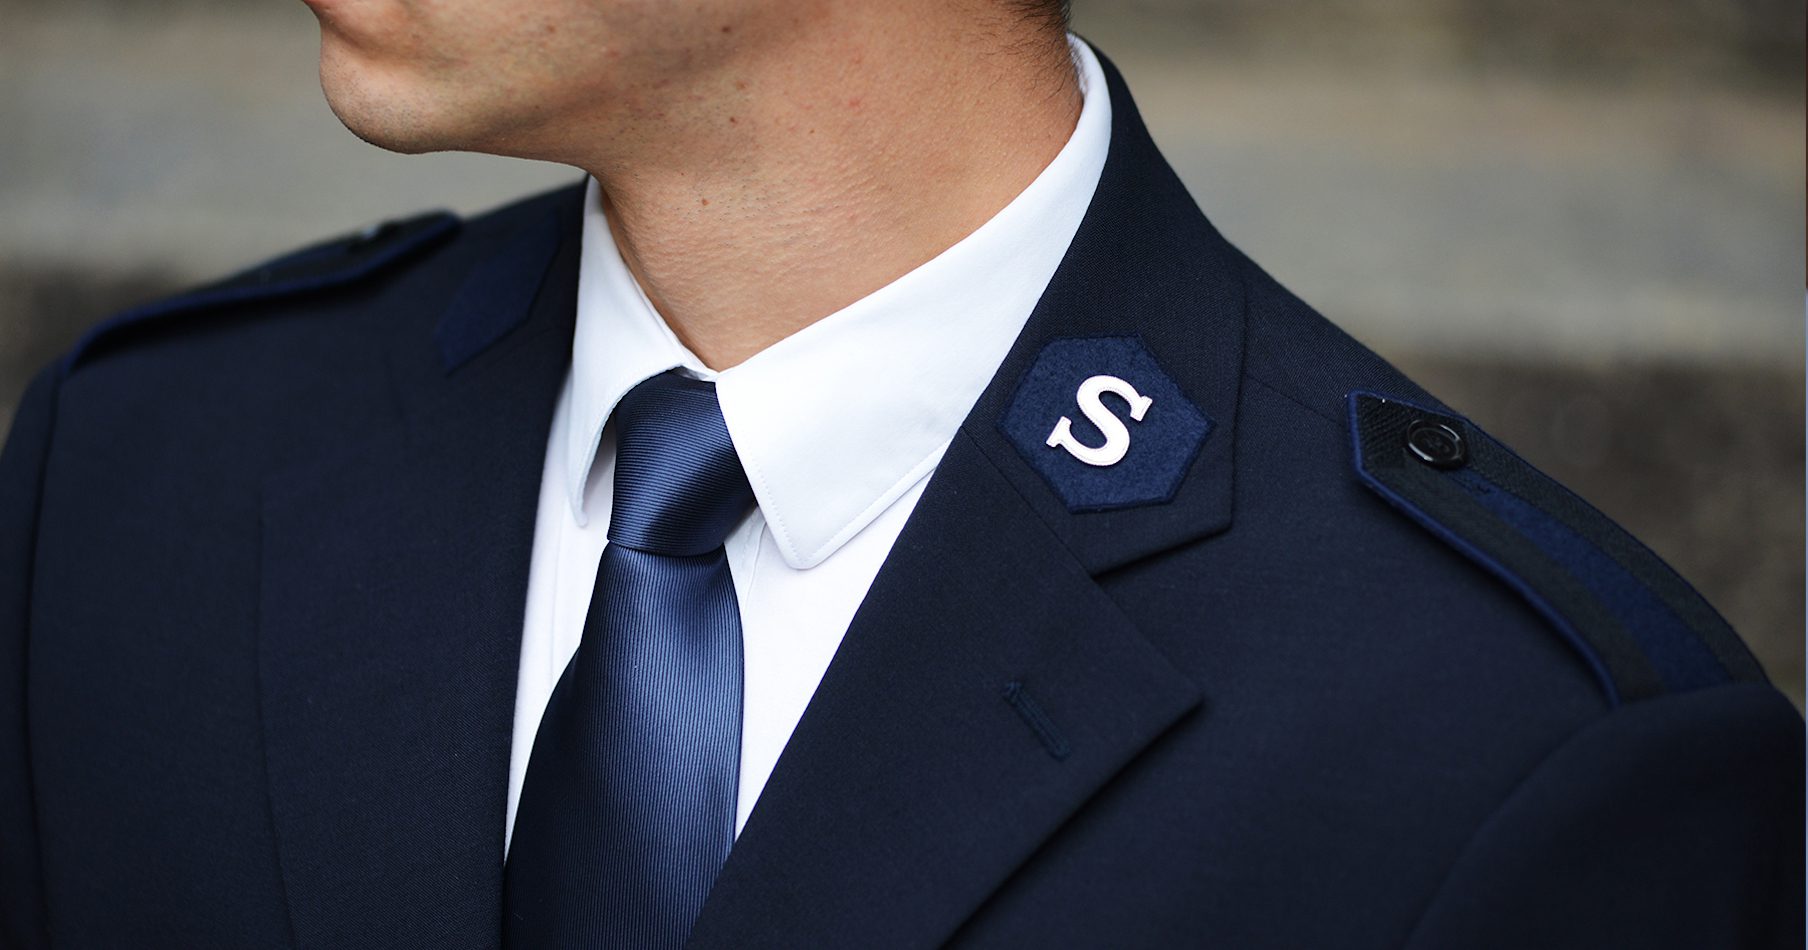 Heilsarmee Uniform mit dem „S“ auf dem Kragen.